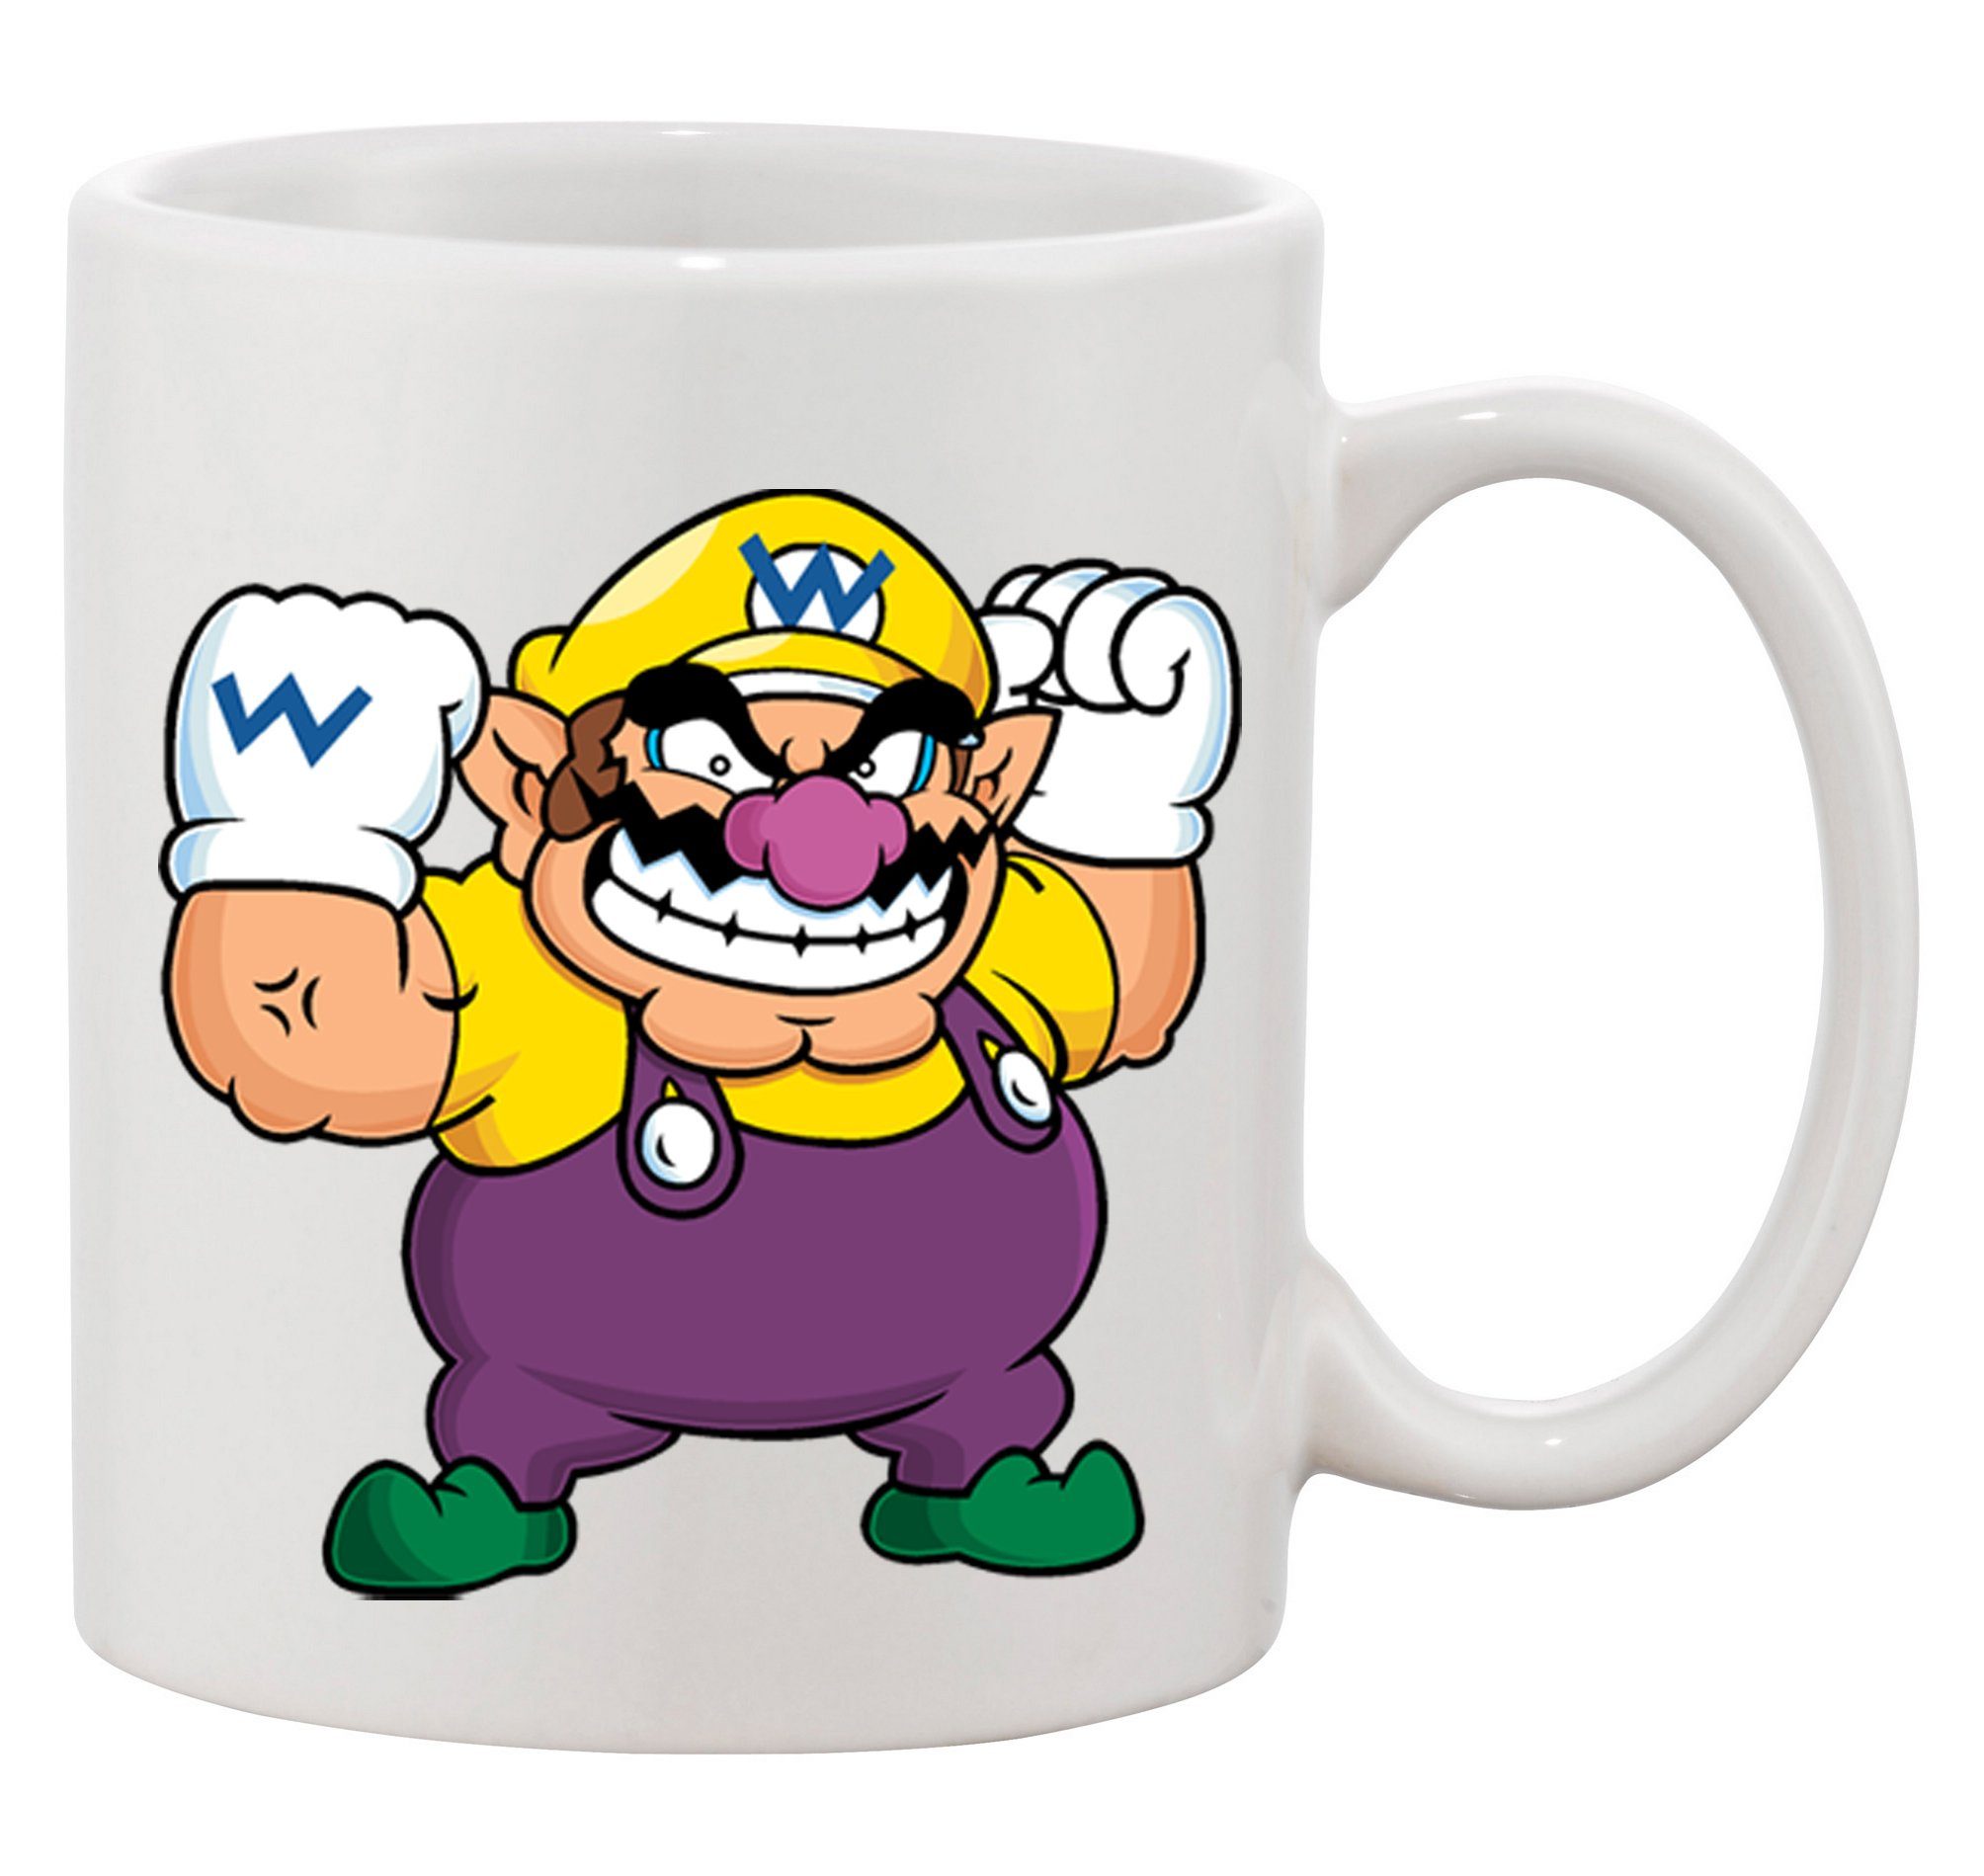 Konsole, Brownie Tasse & Keramik Wario Mario Weiß Nintendo Blondie Gamer Gaming Spiele